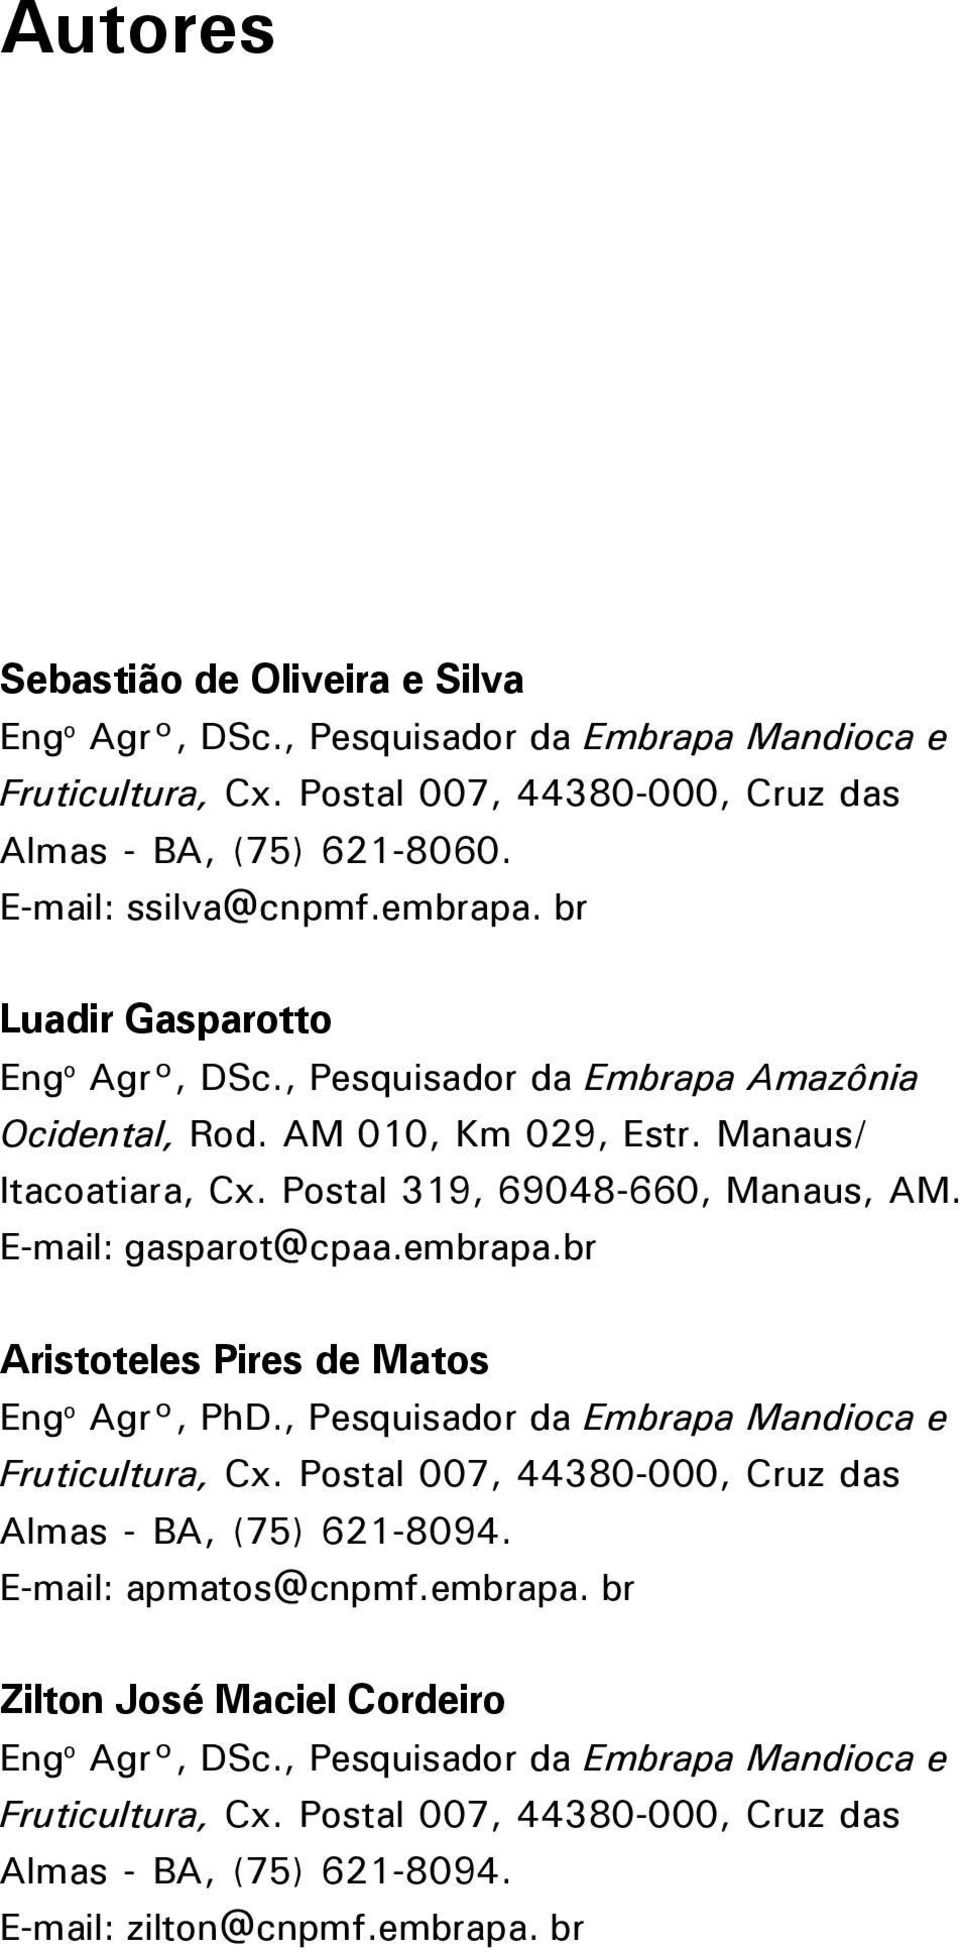 E-mail: gasparot@cpaa.embrapa.br Aristoteles Pires de Matos Eng o Agr, PhD., Pesquisador da Embrapa Mandioca e Fruticultura, Cx. Postal 007, 44380-000, Cruz das Almas - BA, (75) 621-8094.